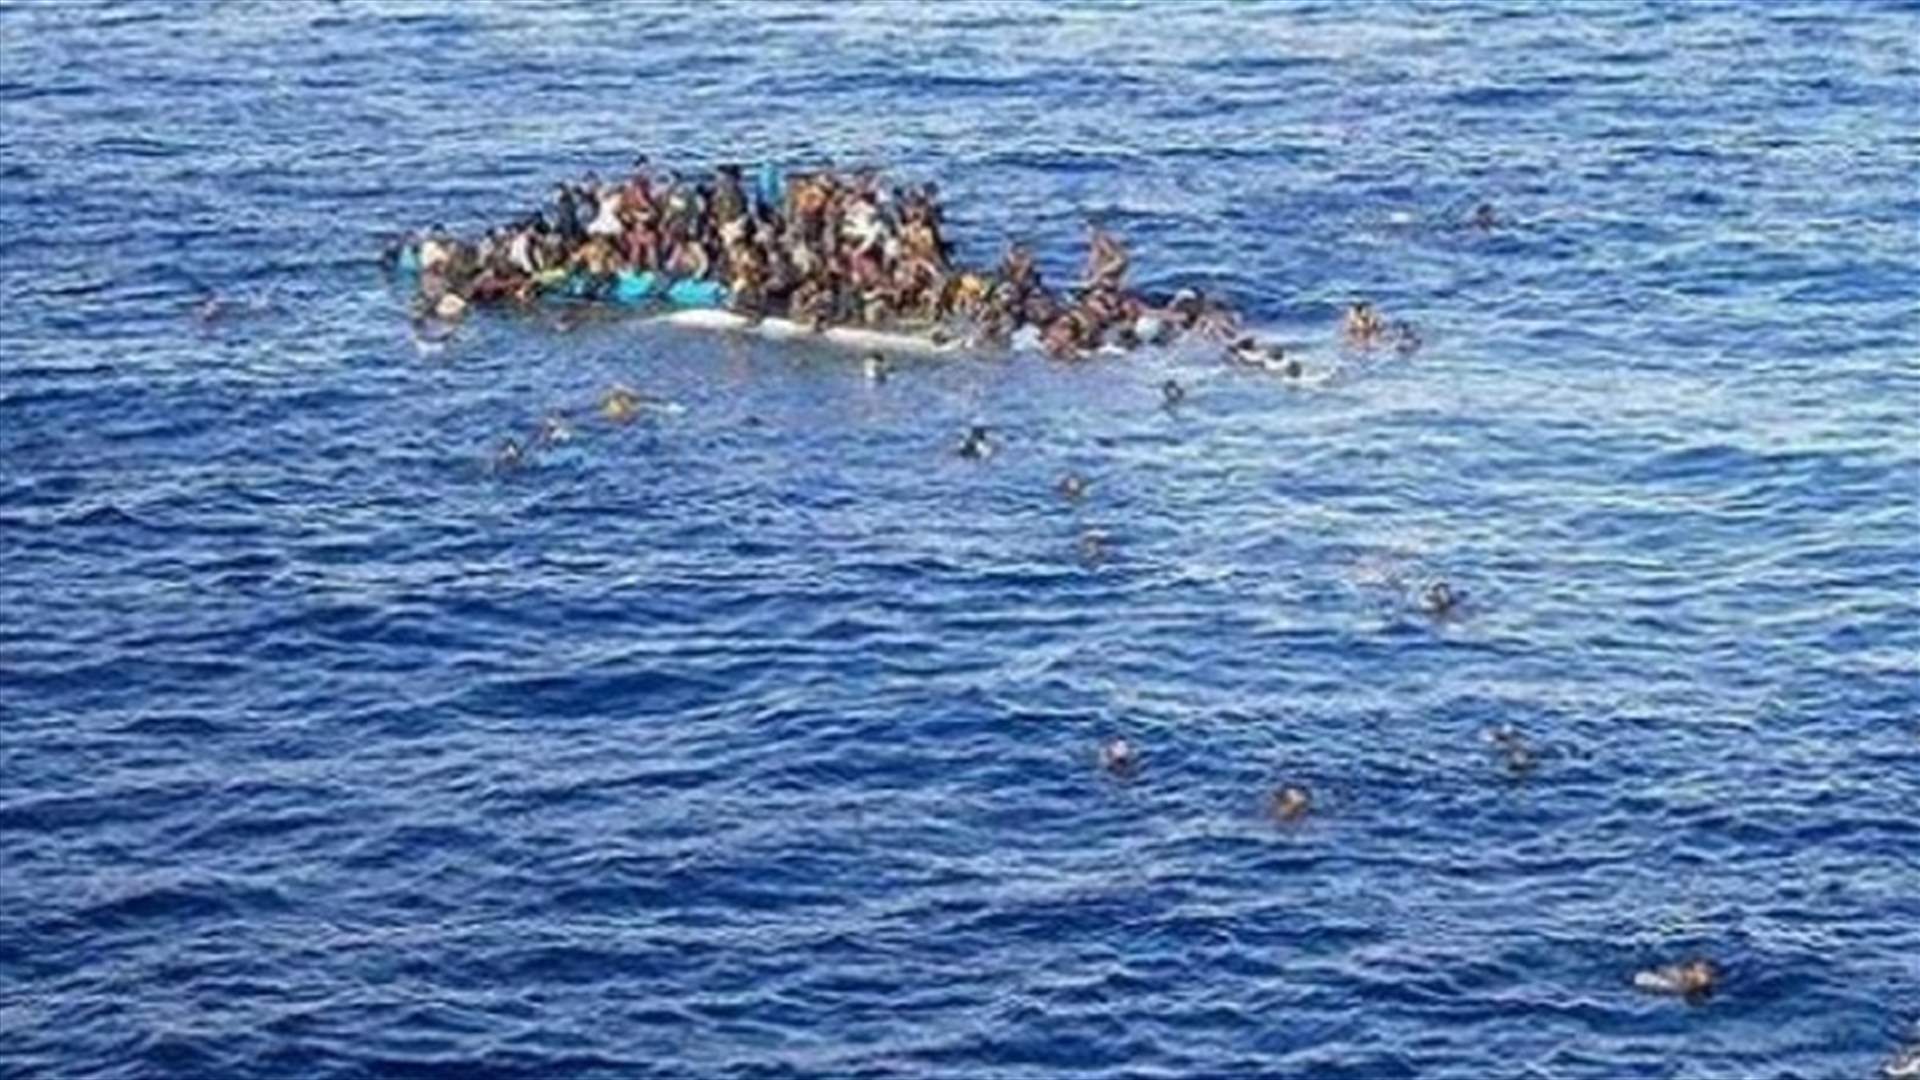      فقدان اثر نحو 100 مهاجر في البحر قبالة ليبيا 